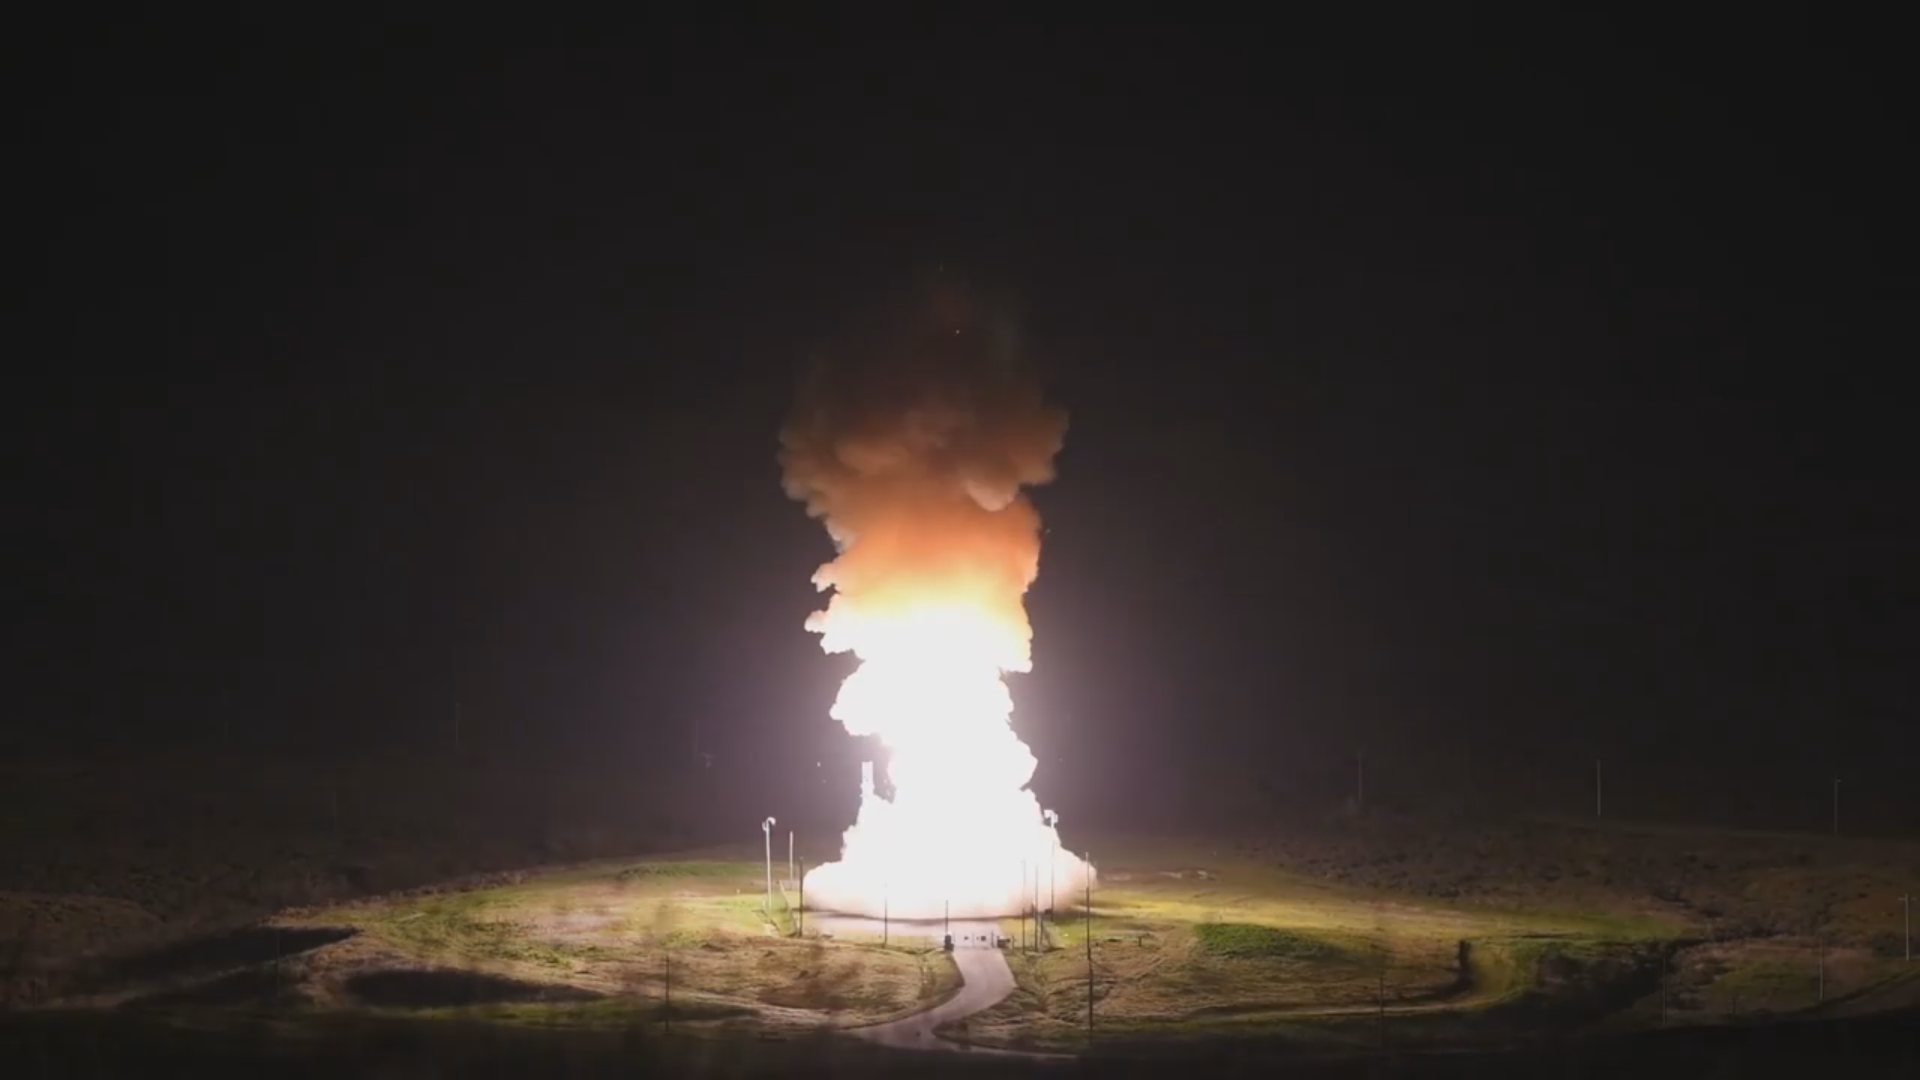 L'armée de l'air américaine montre une vidéo rare du lancement d'un missile balistique intercontinental Minuteman III